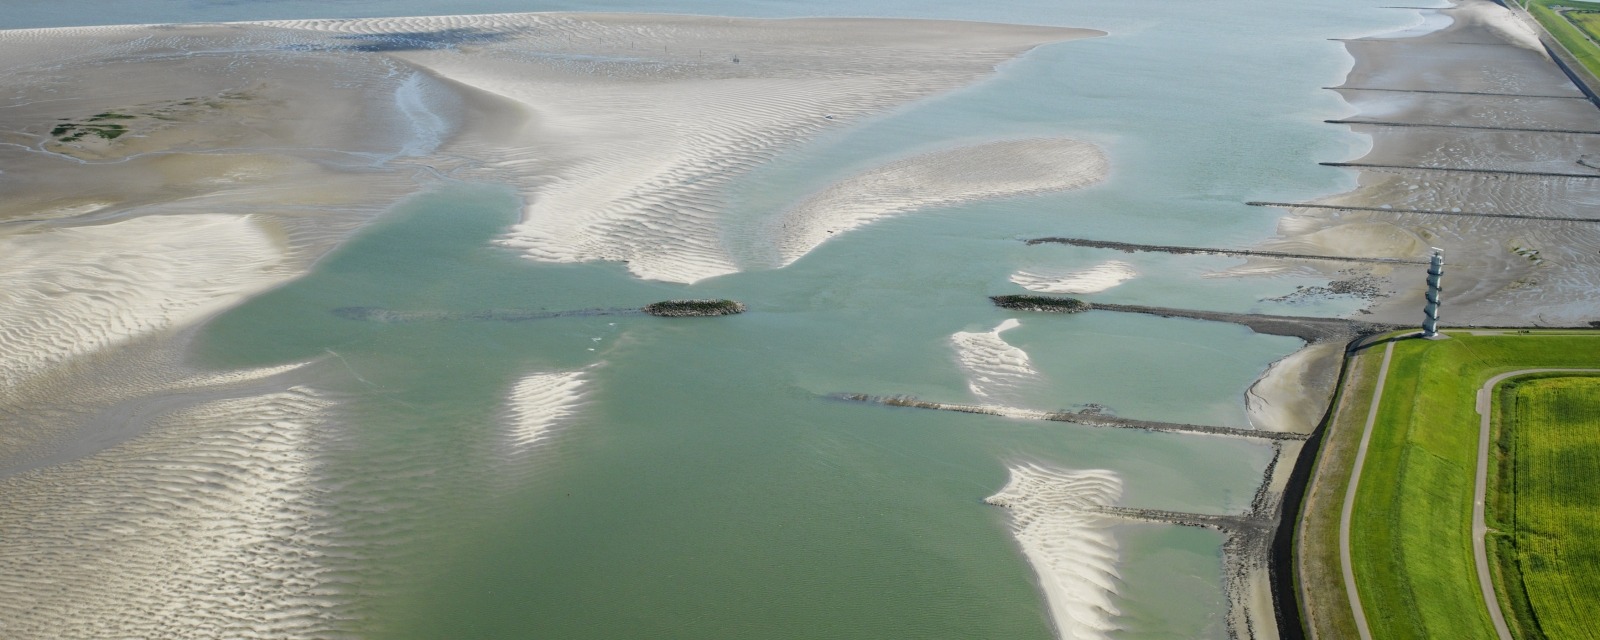 luchtfoto van de Westerschelde met radartoren, strekdammen en de zandplaat bij Ossenisse